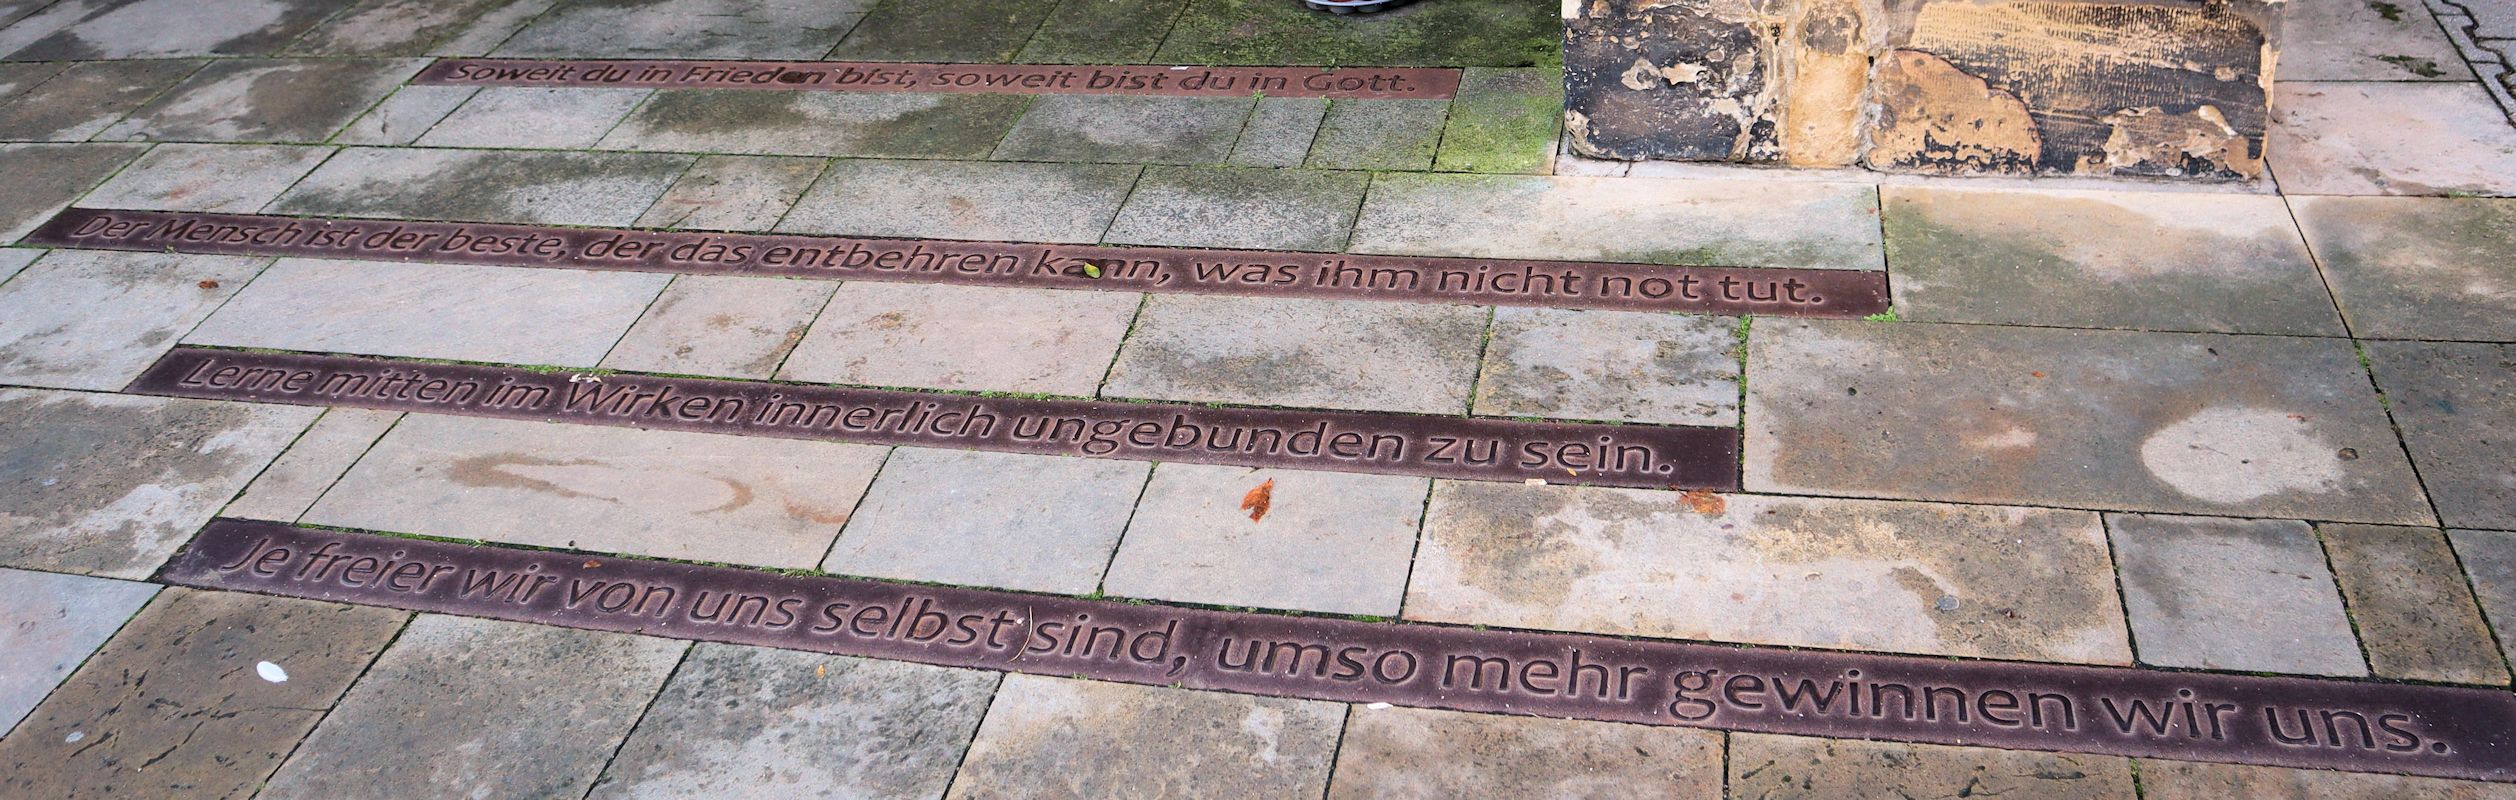 Zitate von Eckart, im Boden eingelassen vor der Predigerkirche in Erfurt